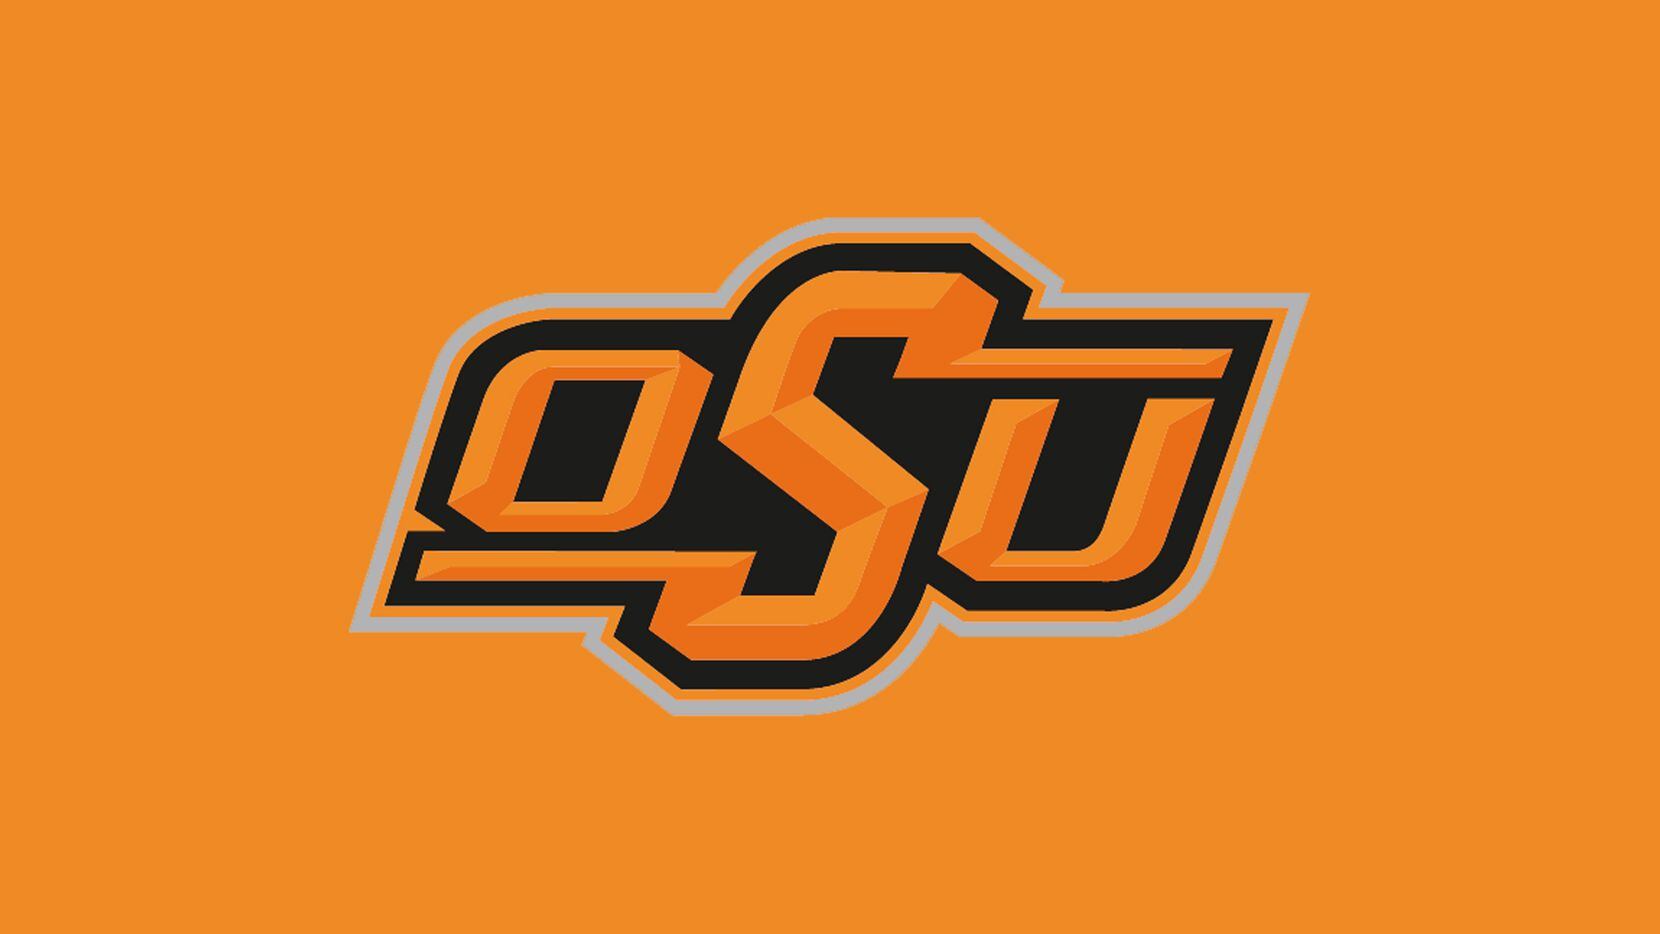 Oklahoma State logo.